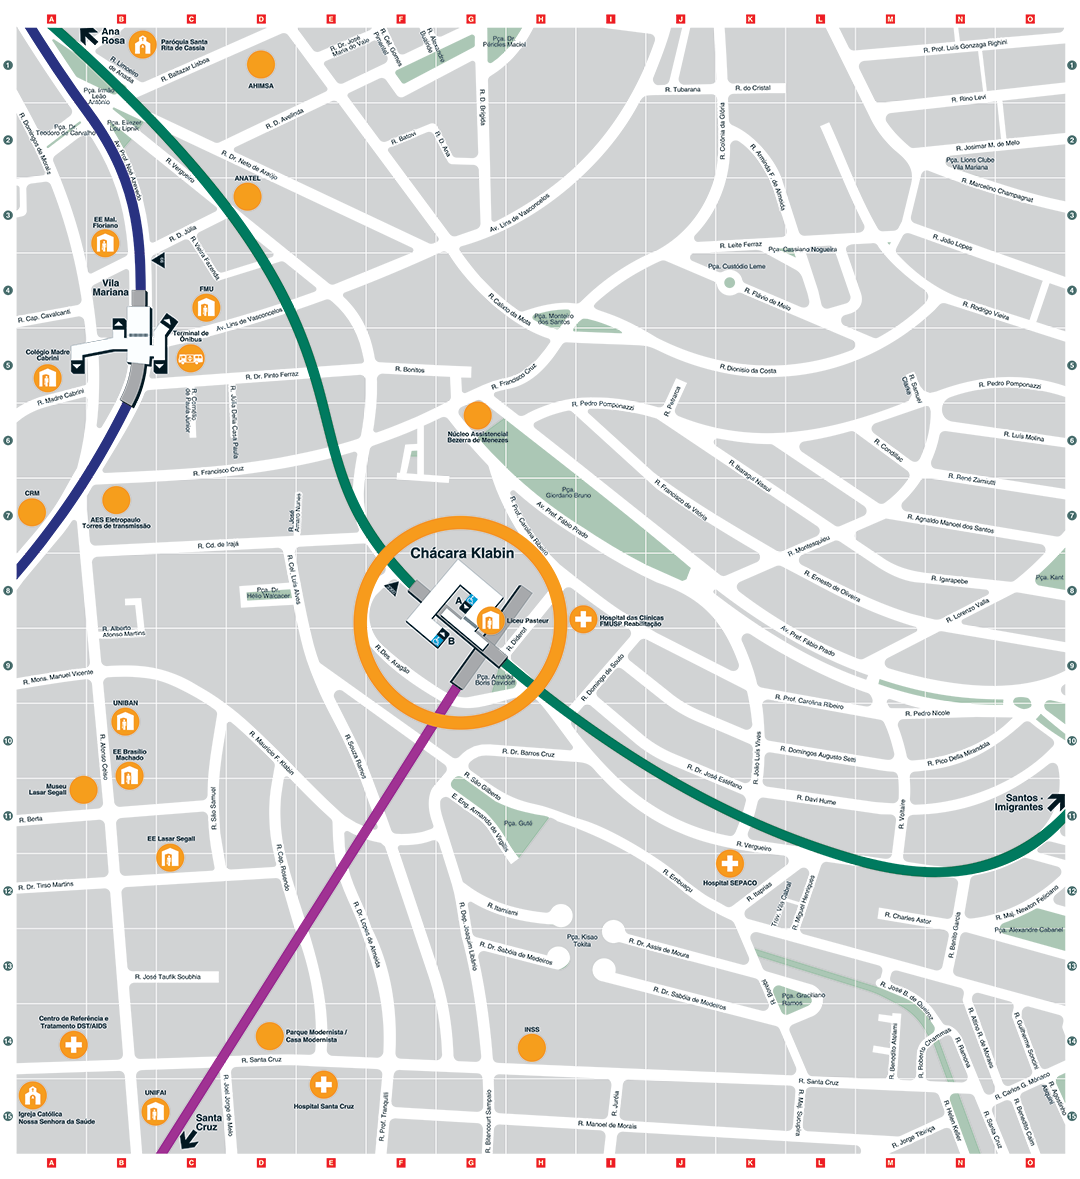 Mapa dos arredores da Estação Chácara Klabin